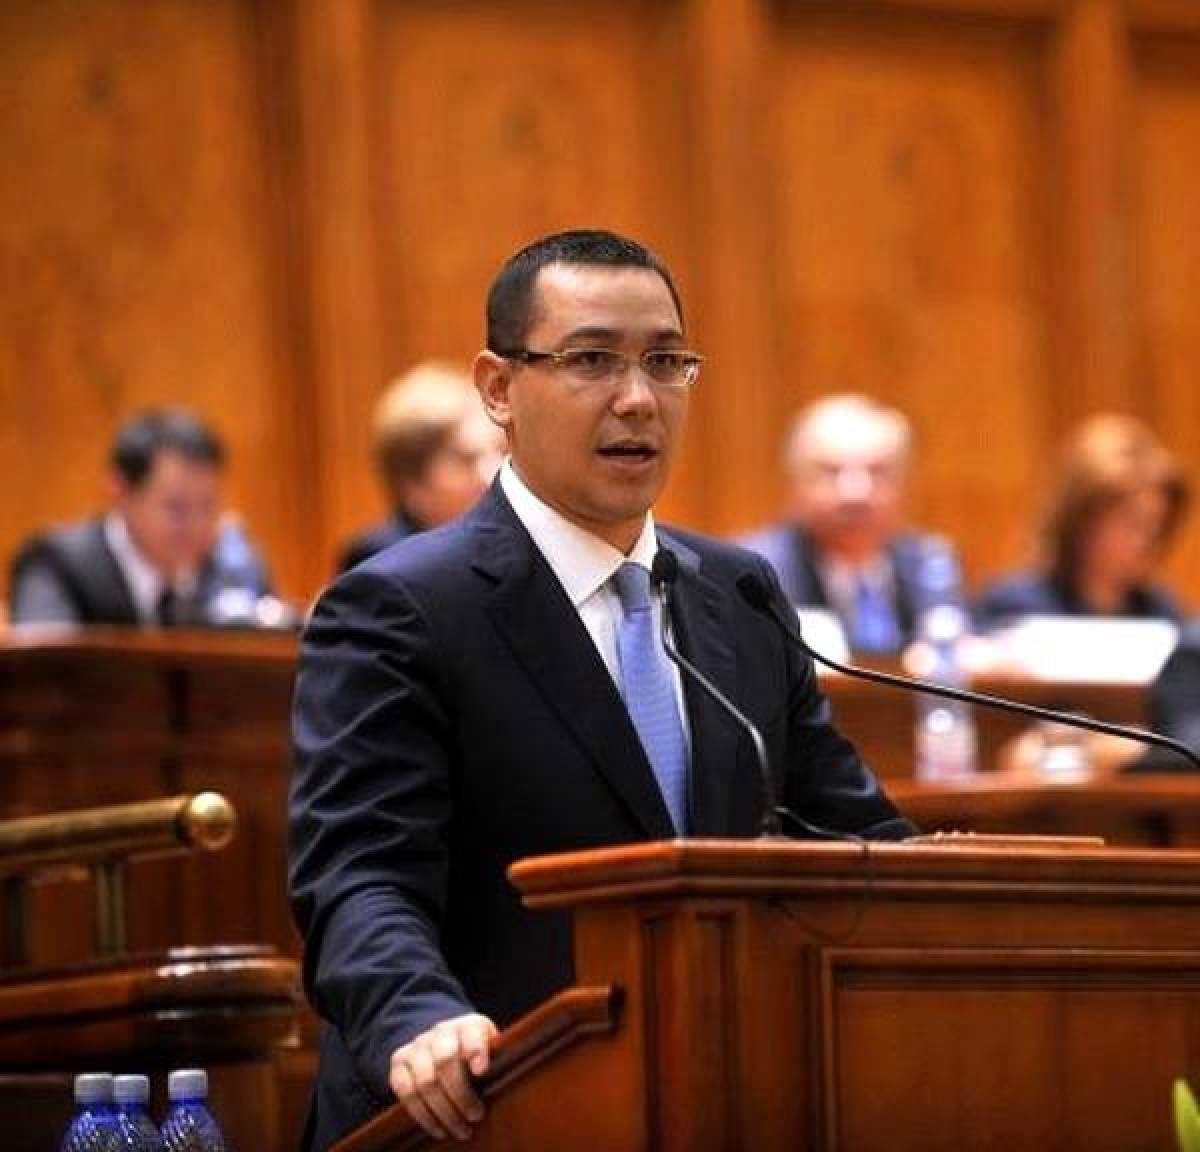 Ce spune Victor Ponta după condamnarea lui Dan Voiculescu: "Sunt obligat să fac tot ce stă în puterile mele pentru ca..."